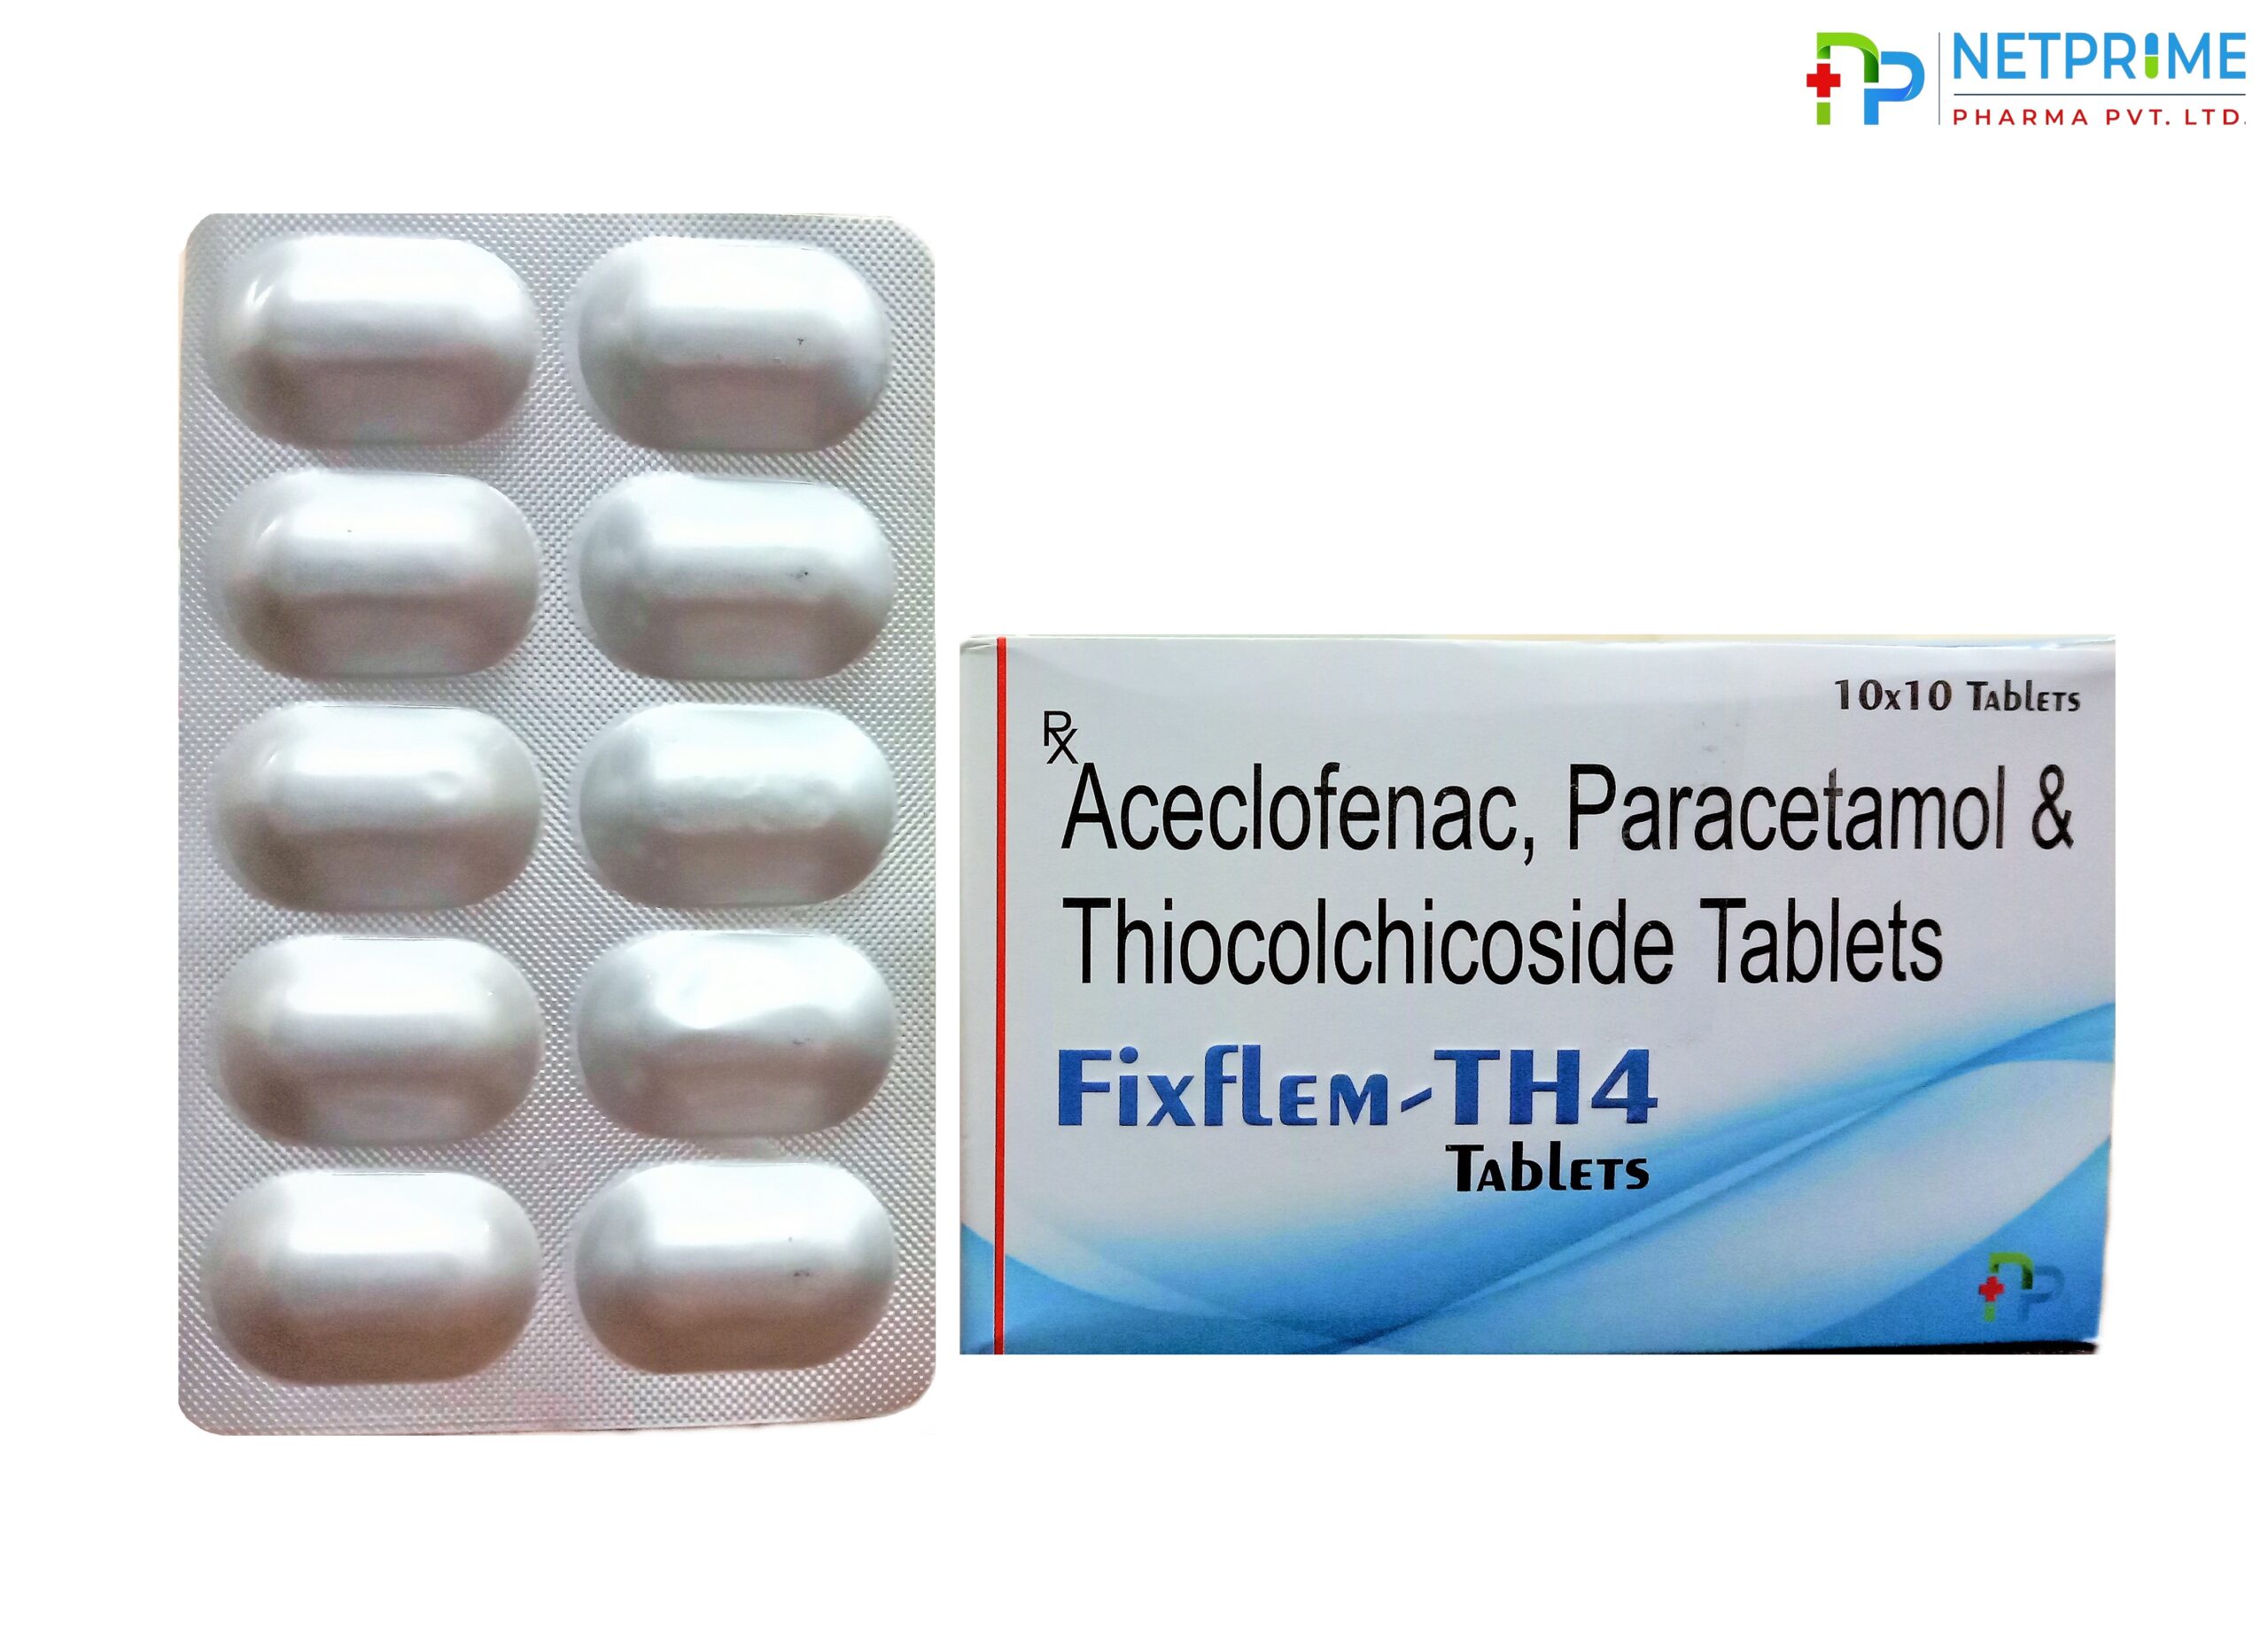 Aceclofenac, Paracetamol and Thiocolchicoside Tablets